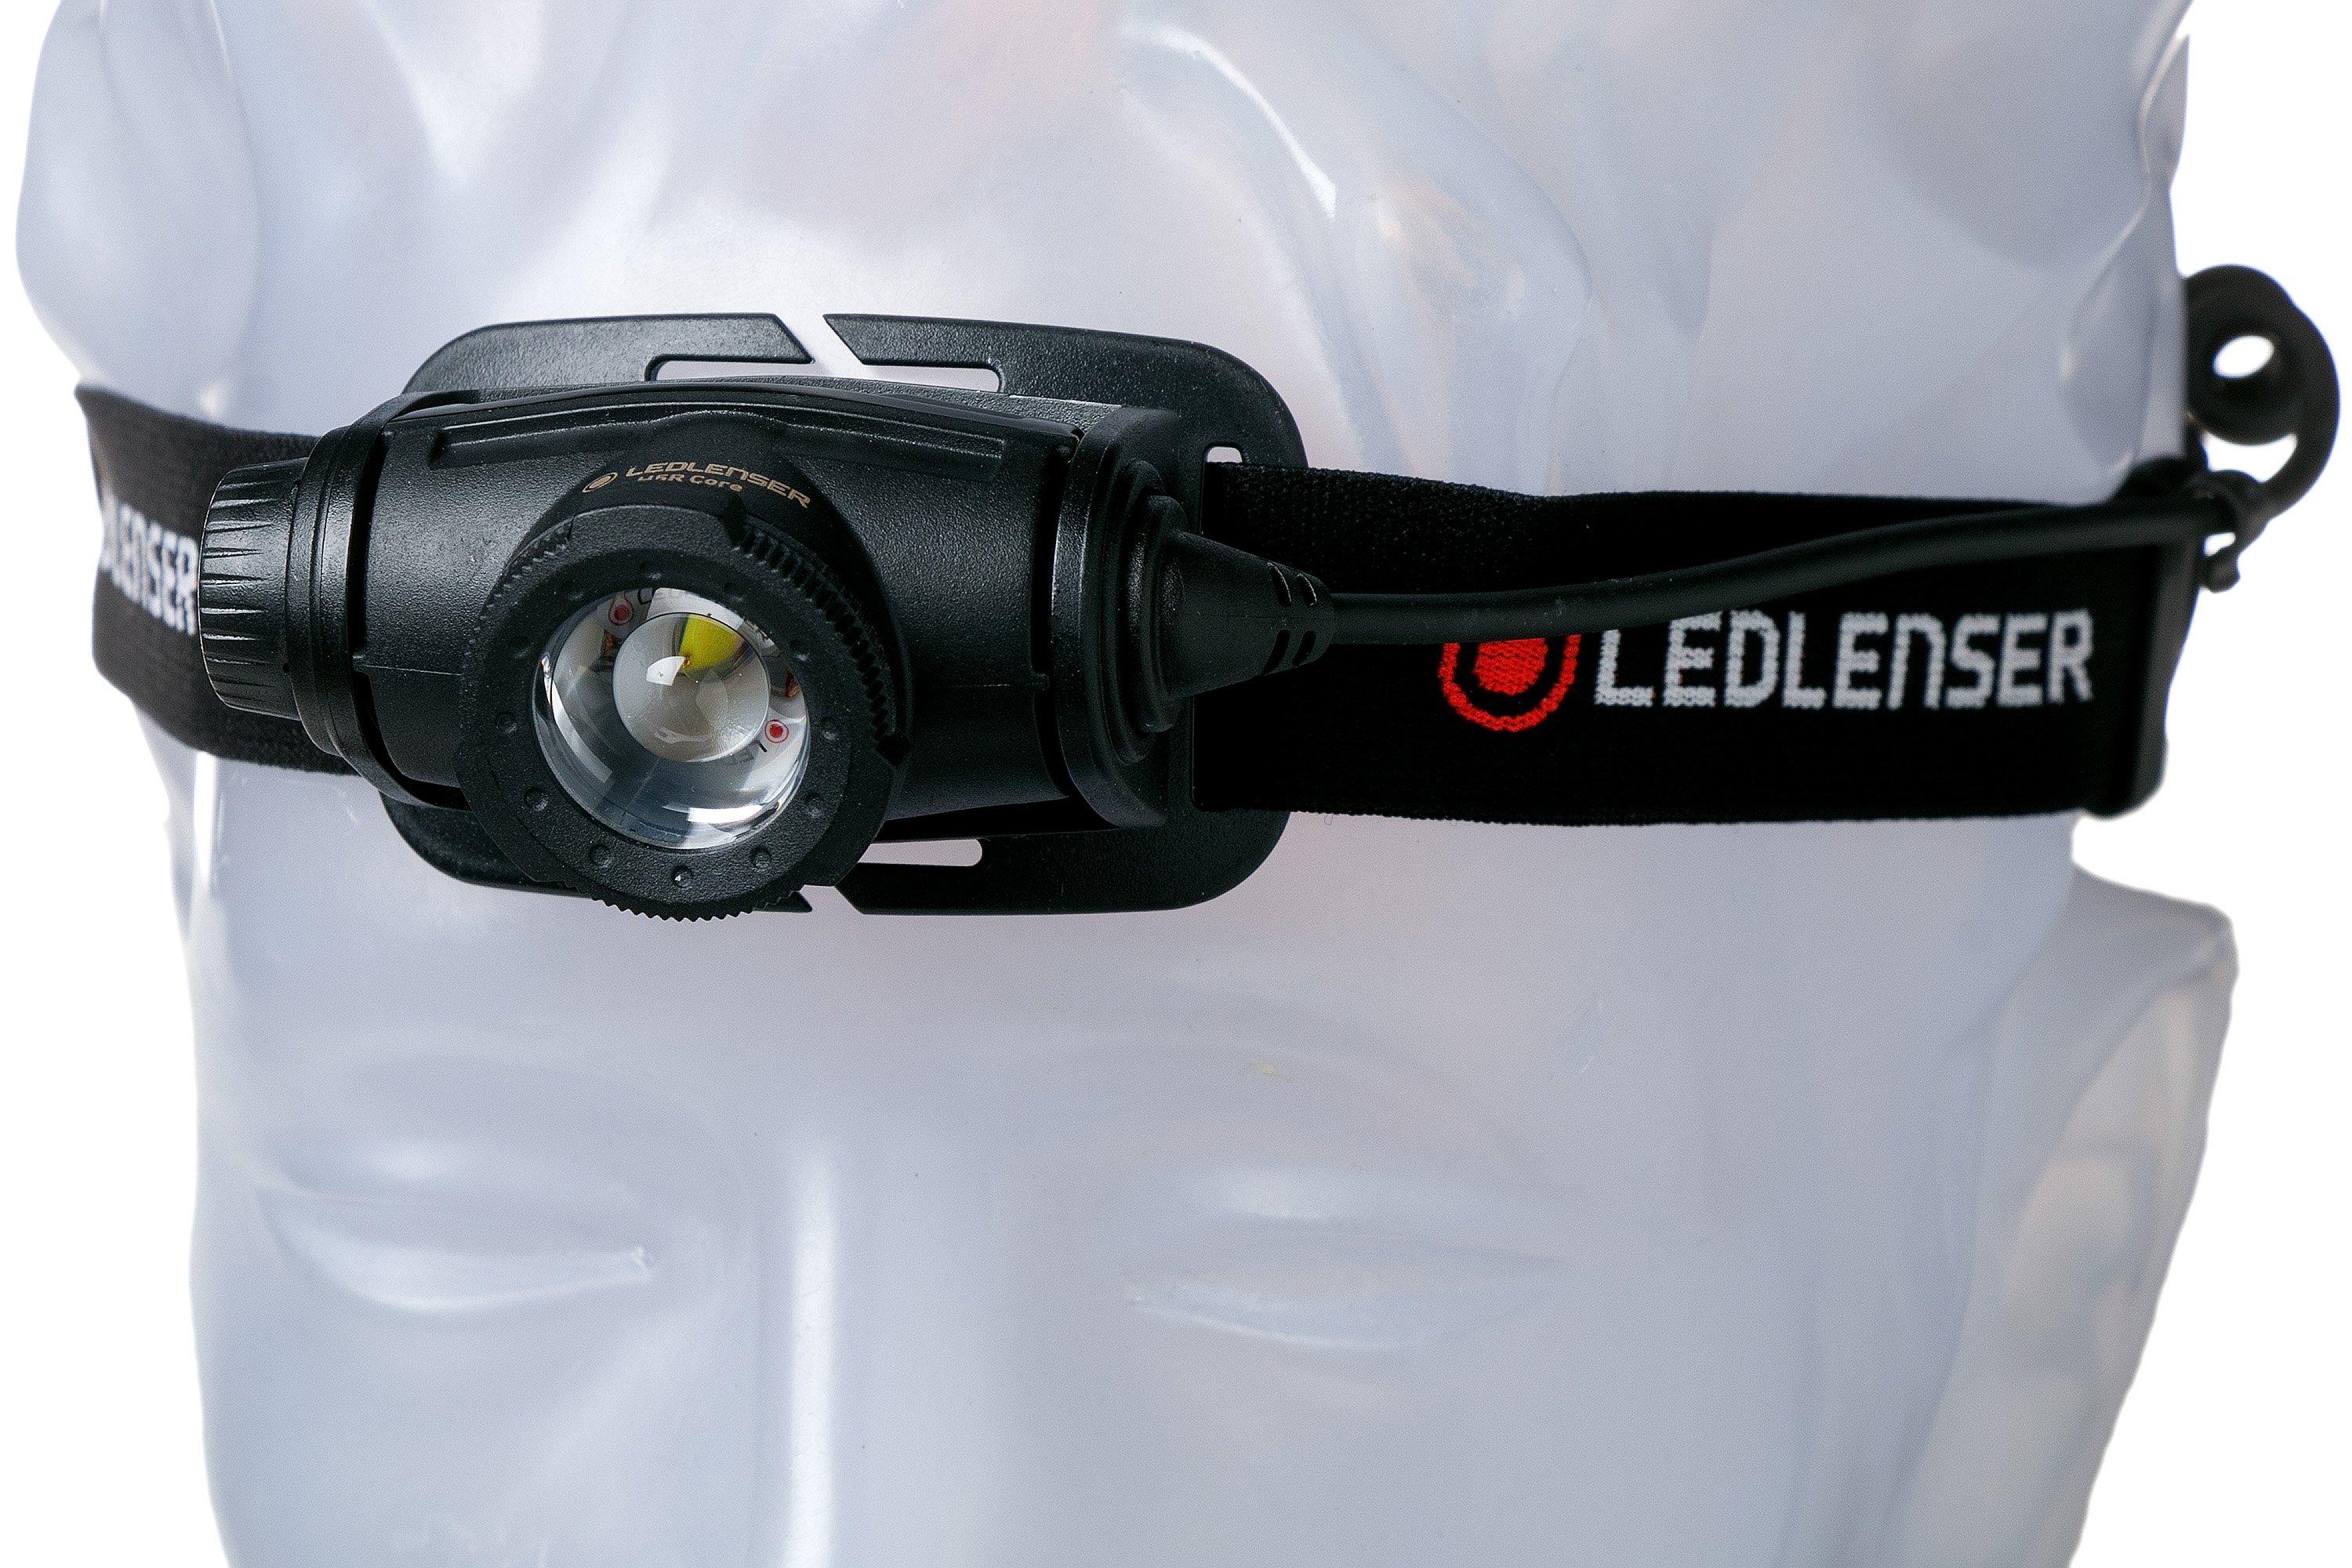 Lampe frontale Rechargeable H5R Core 500 lm Ledlenser - Noir